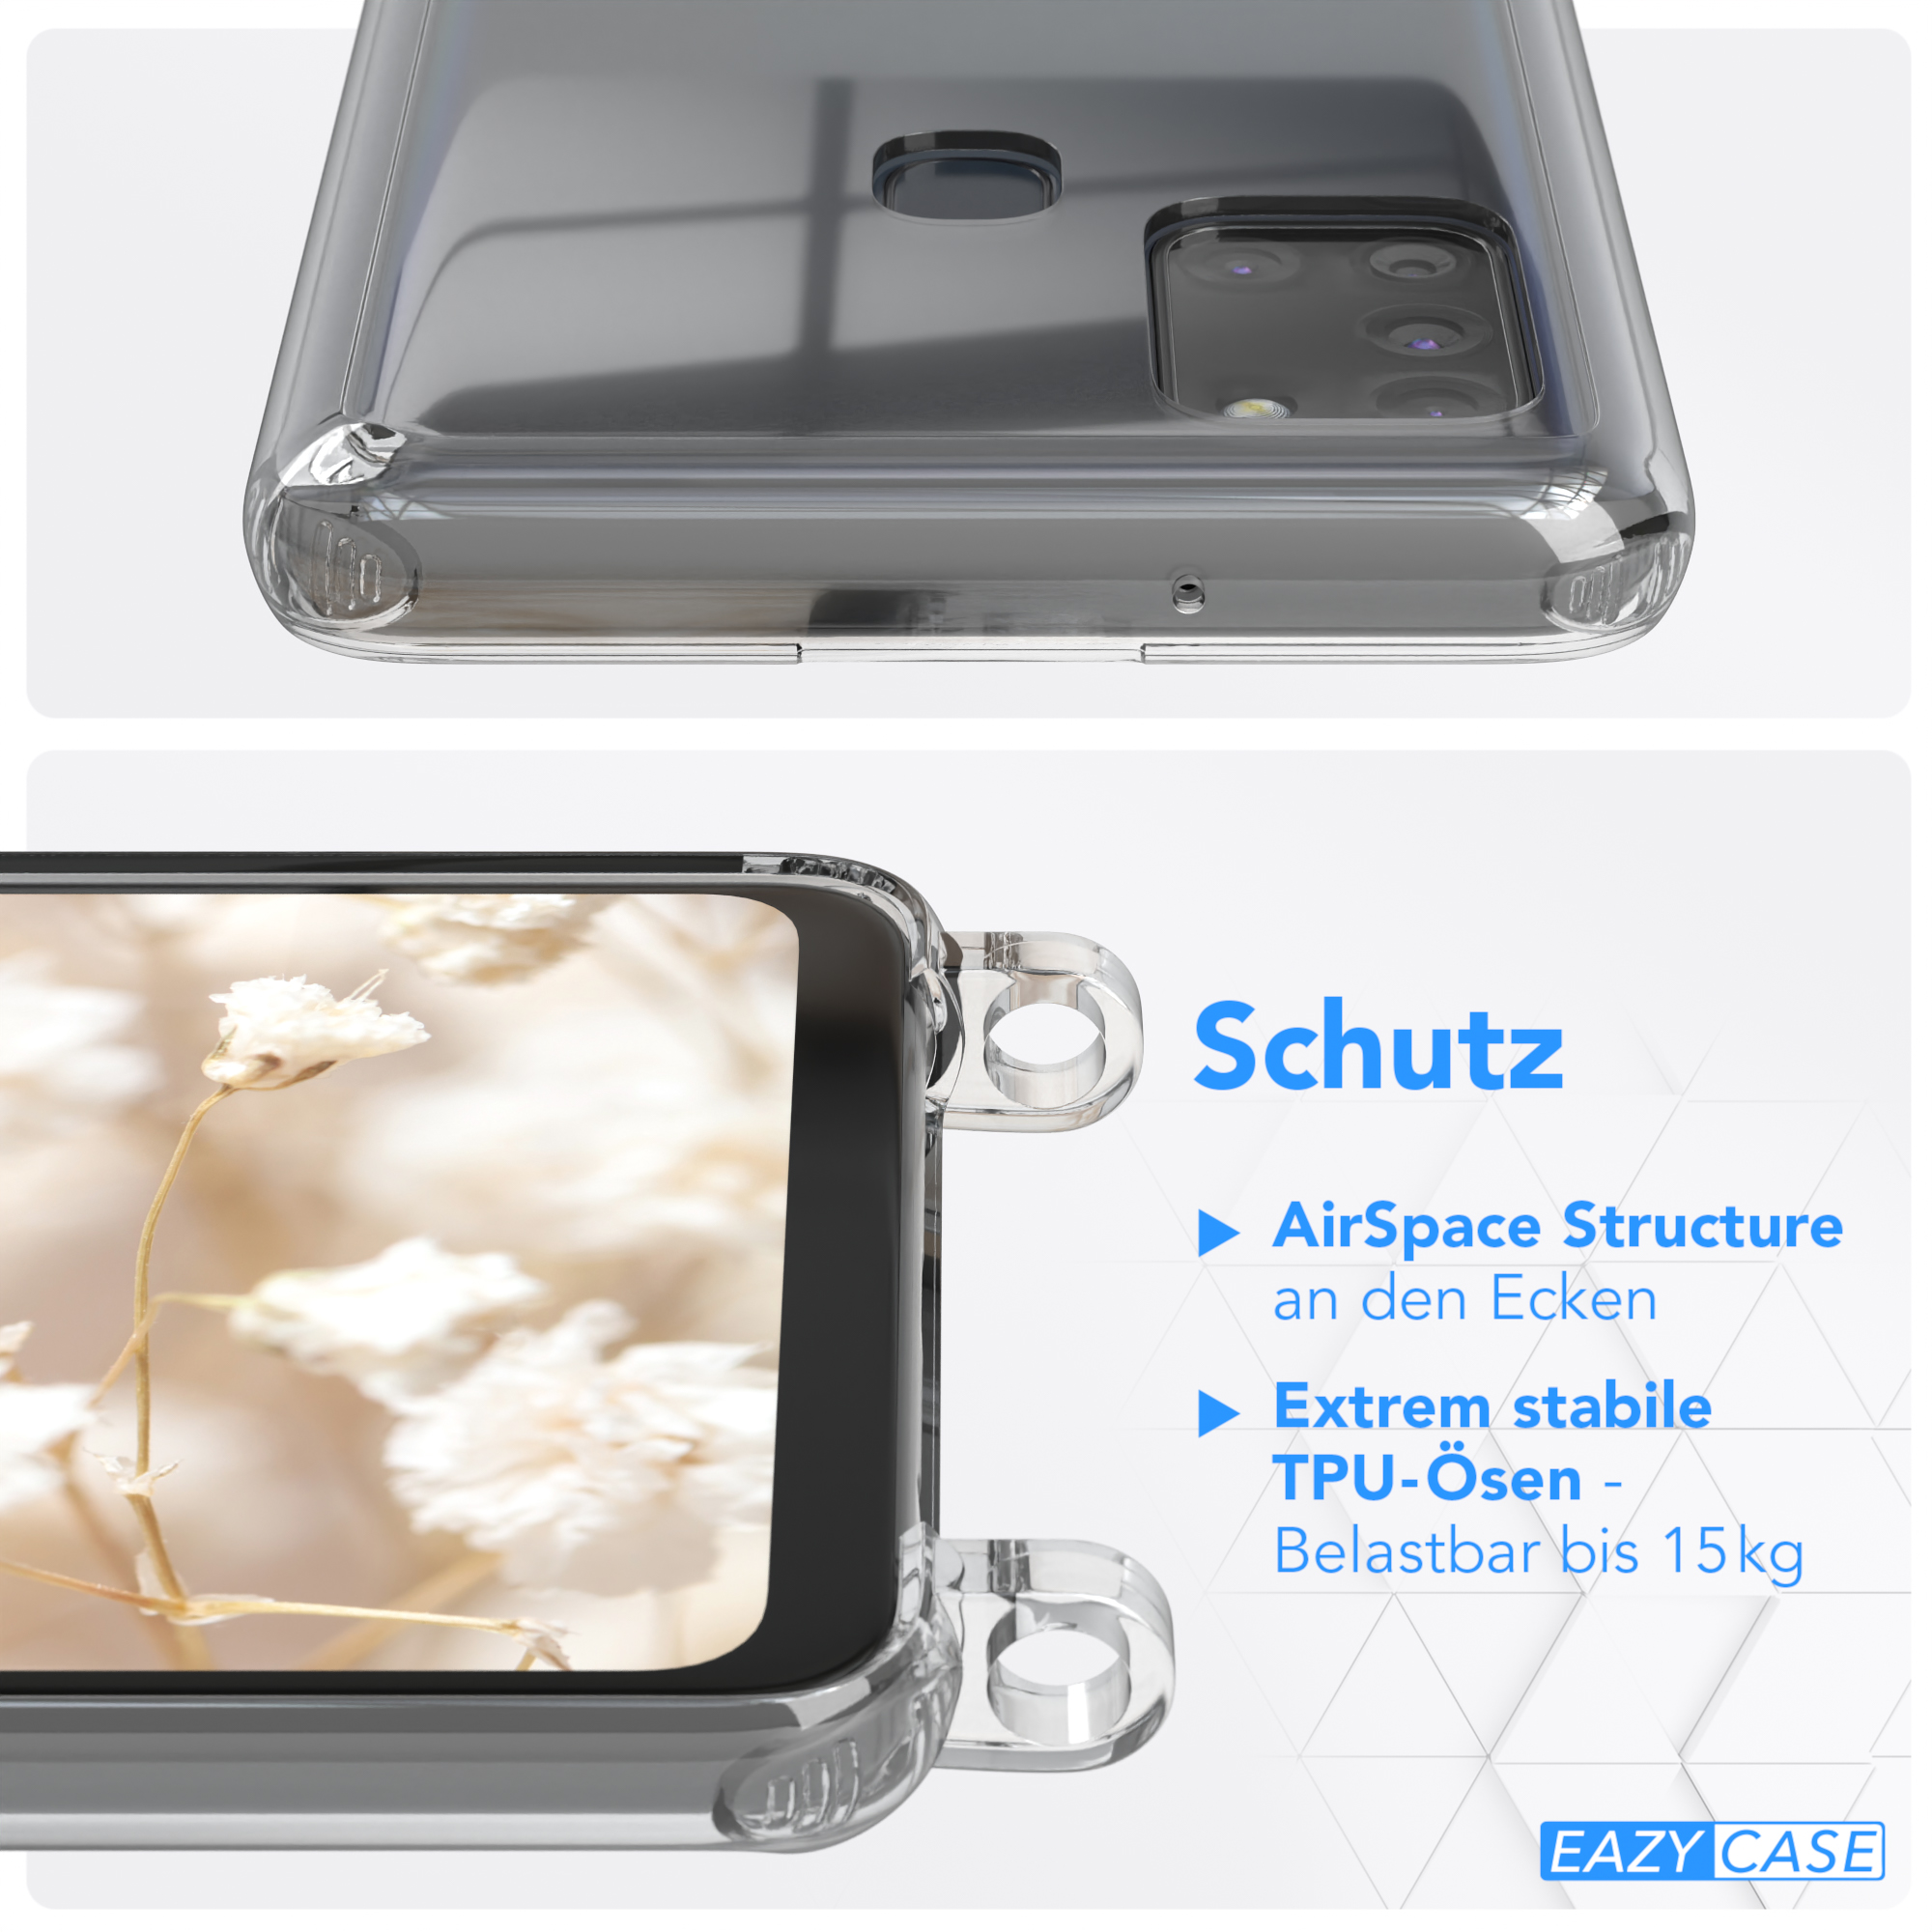 CASE Galaxy Samsung, mit A21s, Transparente Kordel Style, Weiß Blau / EAZY Umhängetasche, Handyhülle Boho